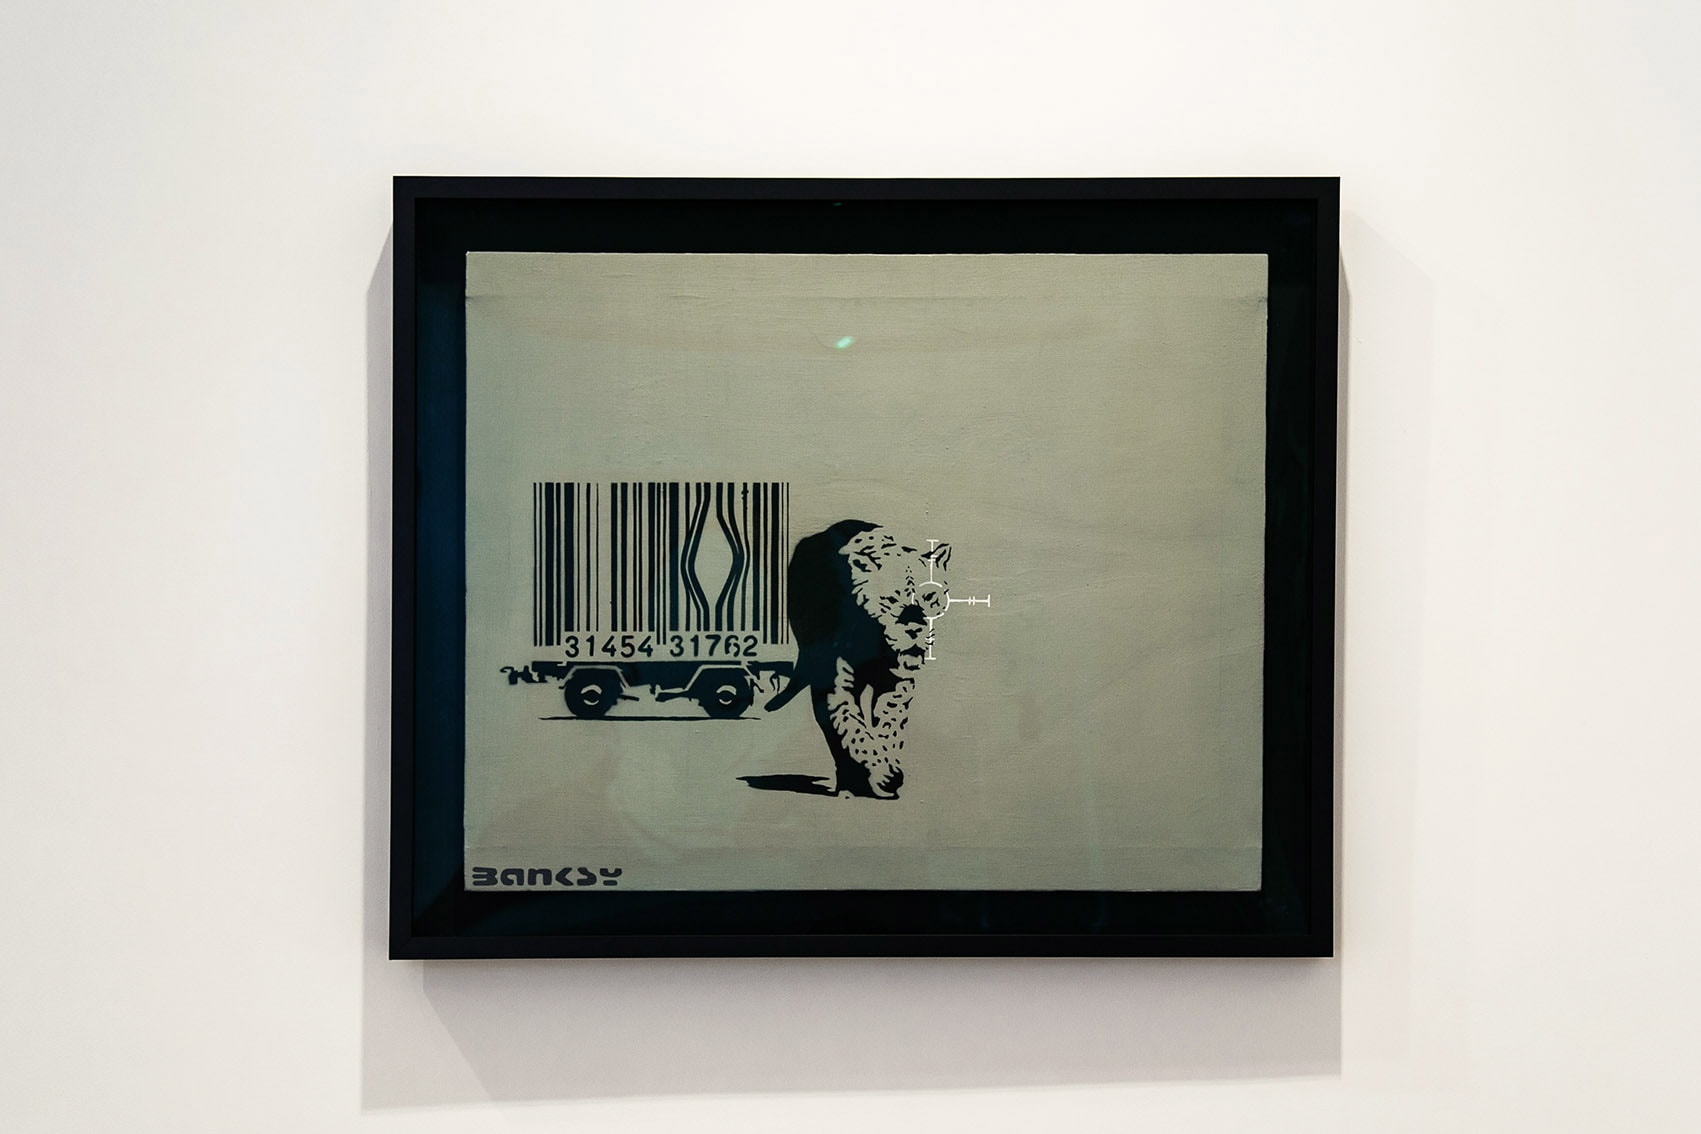 Banksy作品を集めたエキシビション“Greatest Hits”内部の様子をお届け